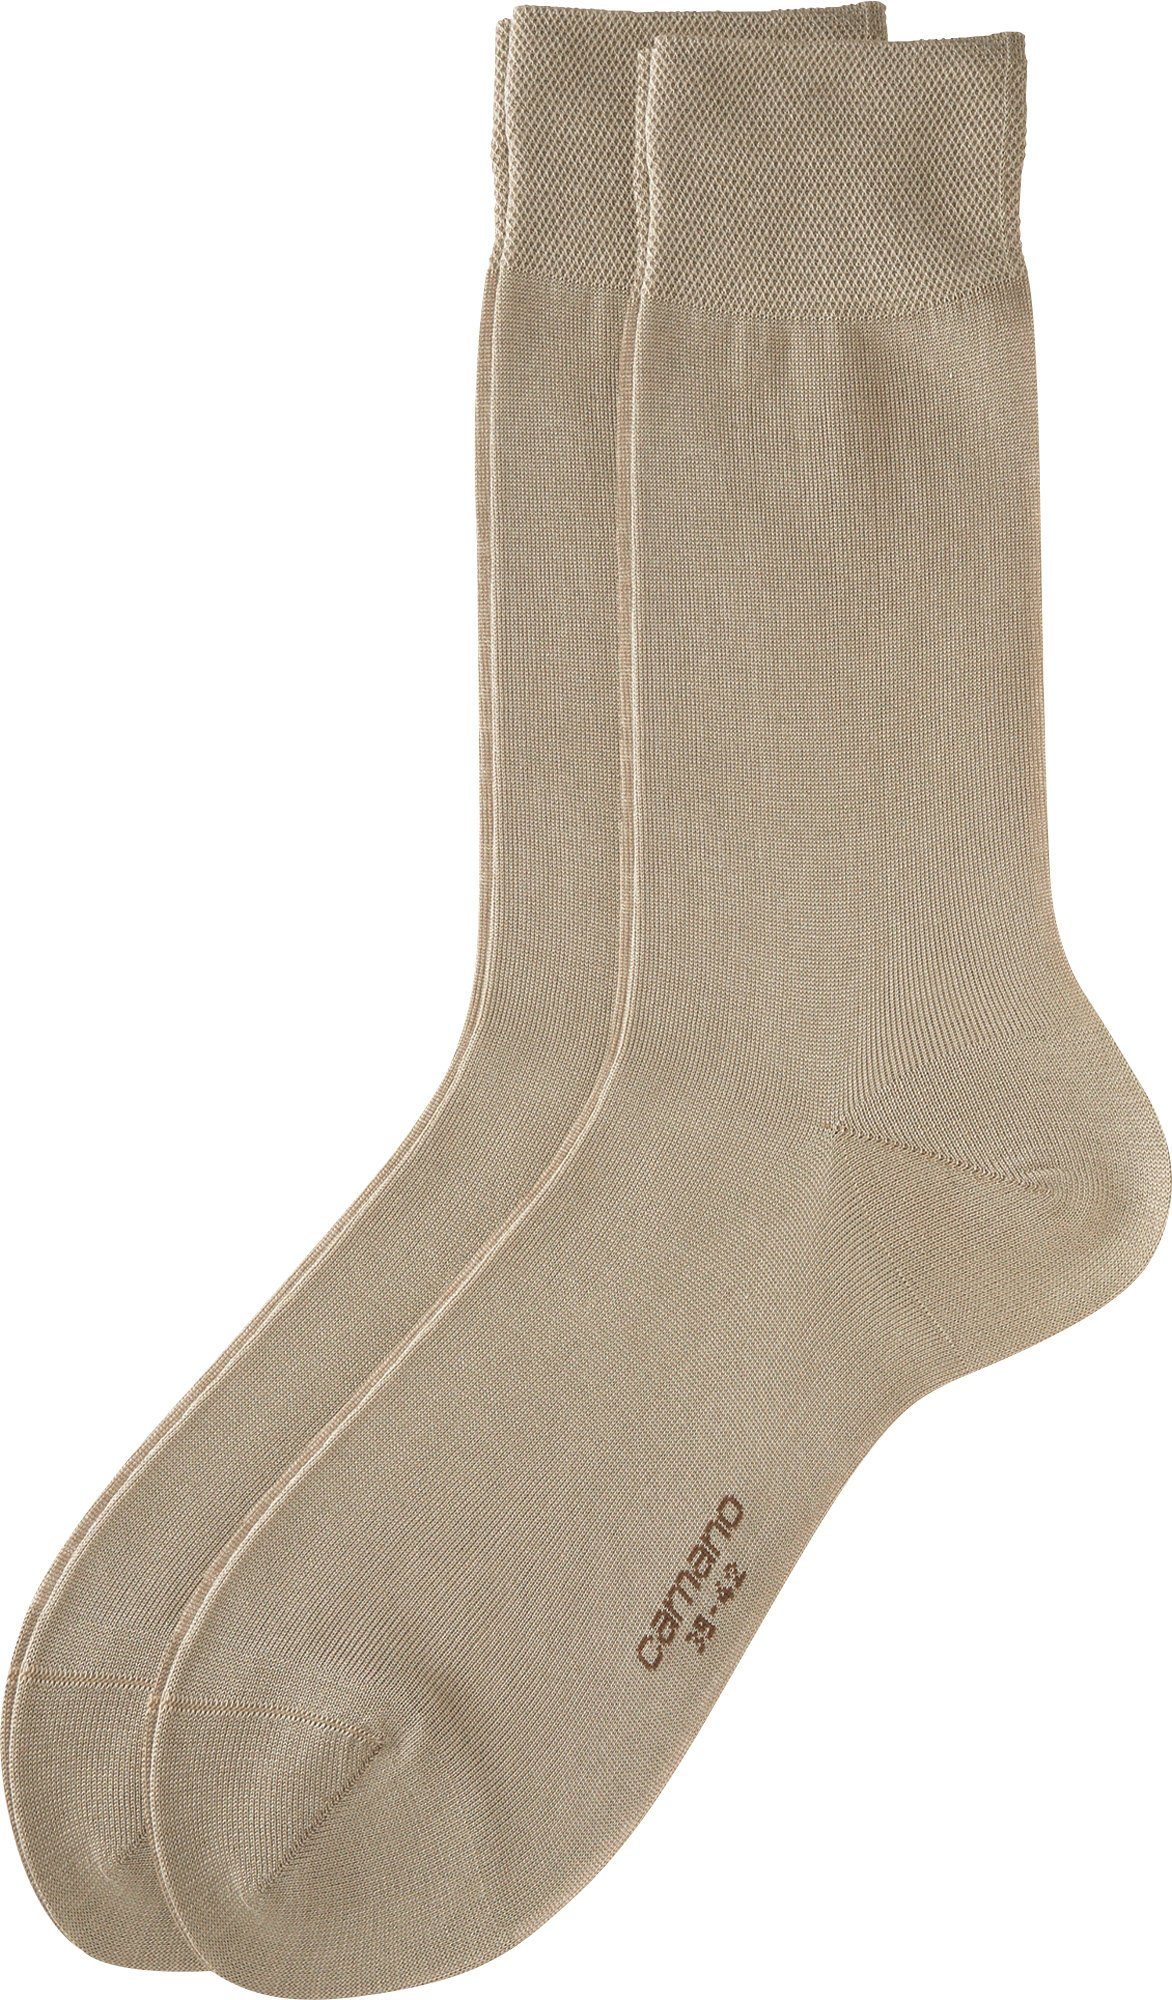 Business-Socken Socken Camano Herren beige Paar Uni 2